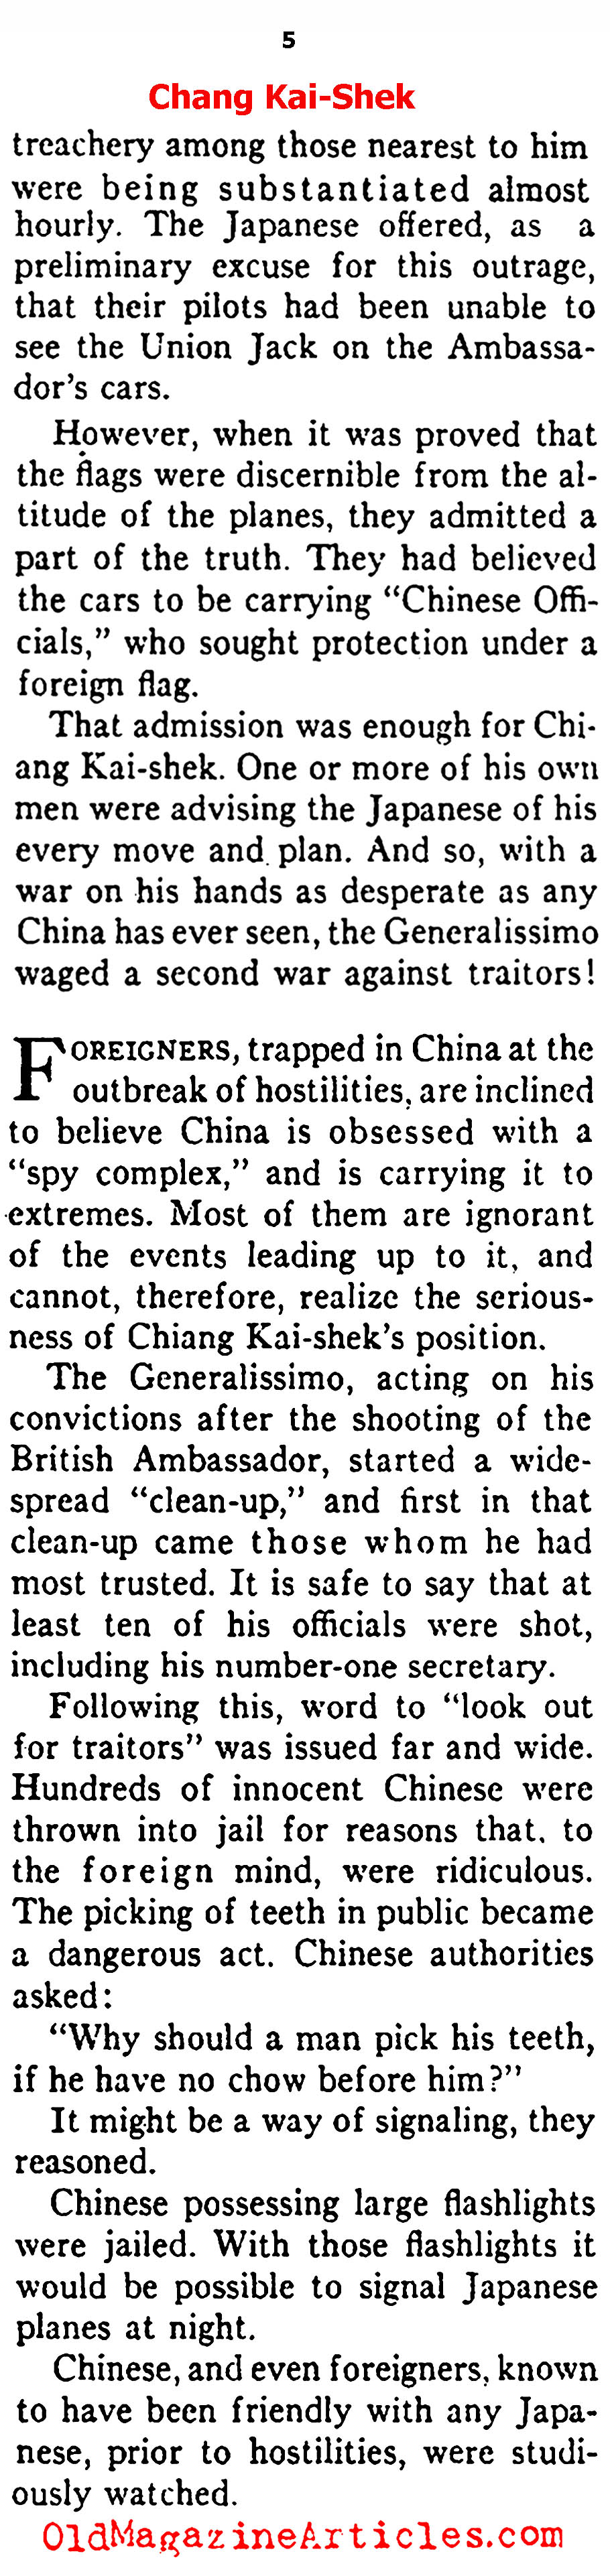 Eyes on Chiang Kai-Shek (Ken Magazine, 1938)